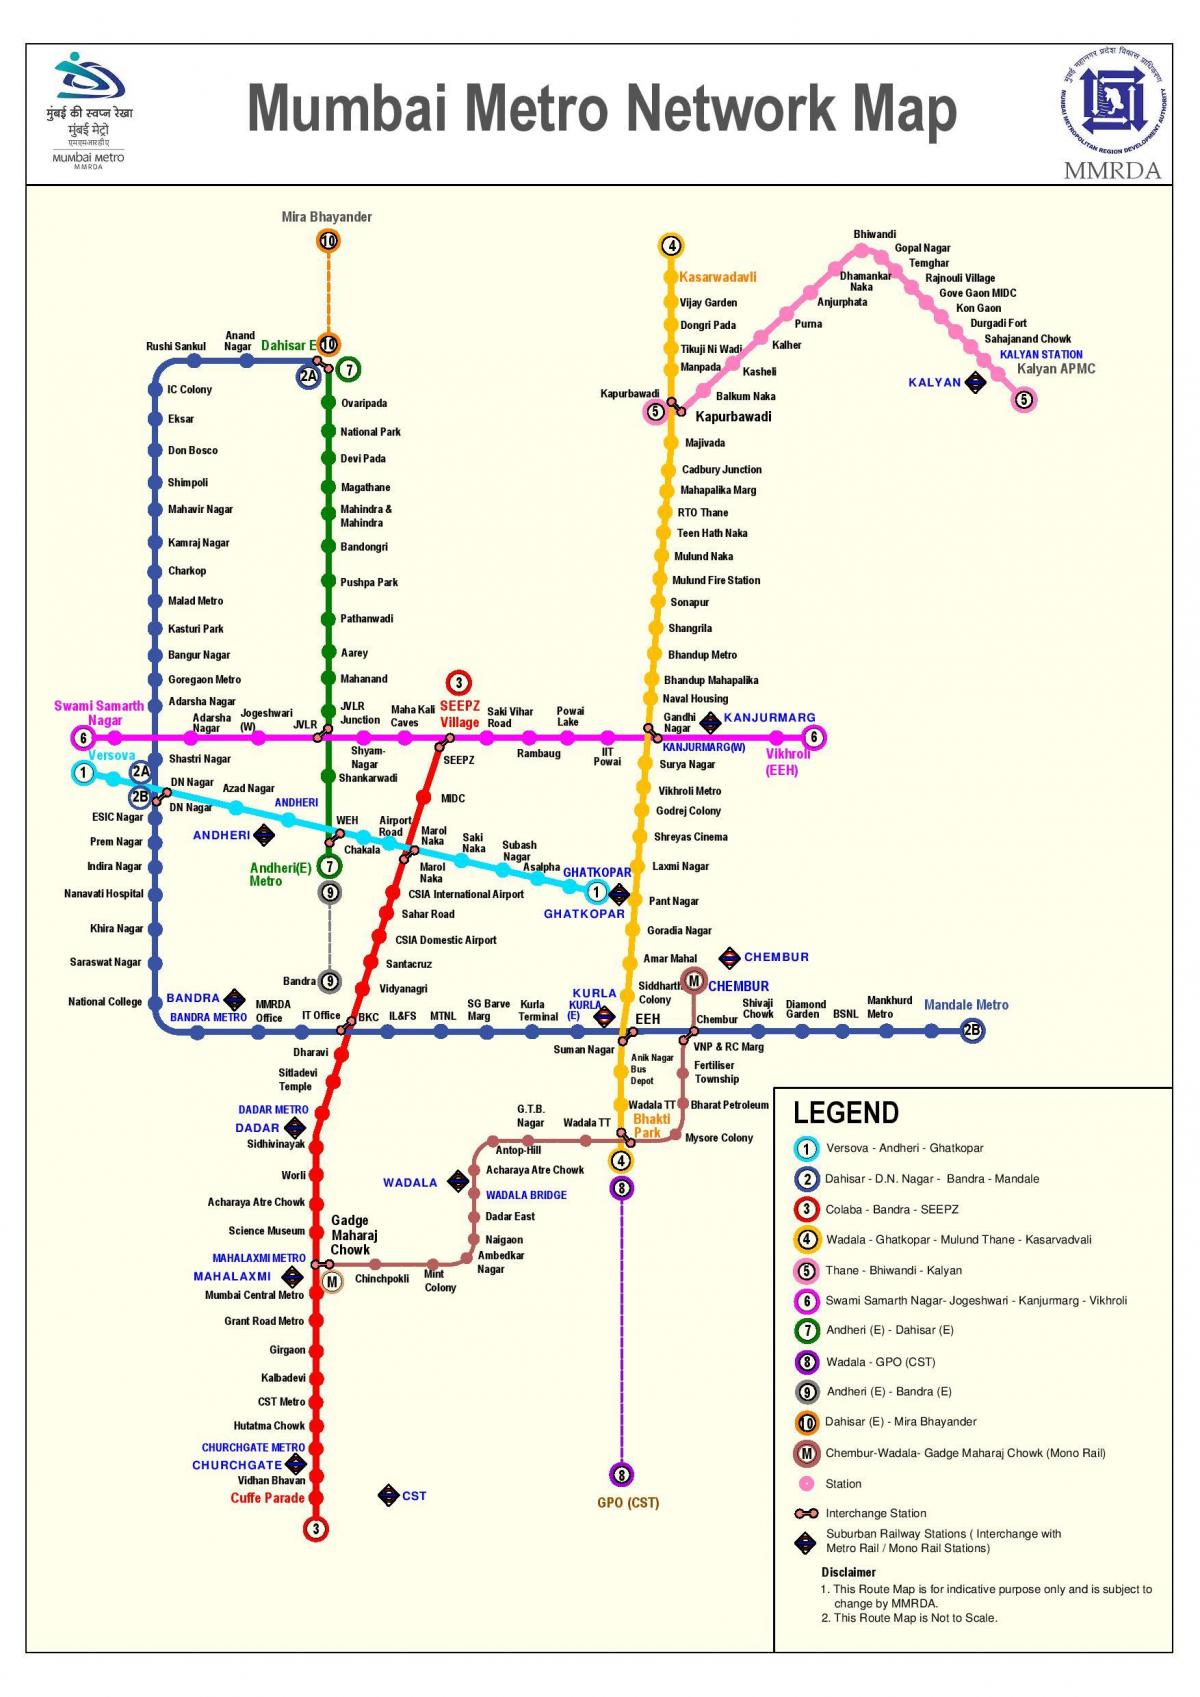 метро маршрутата на мапата Мумбаи